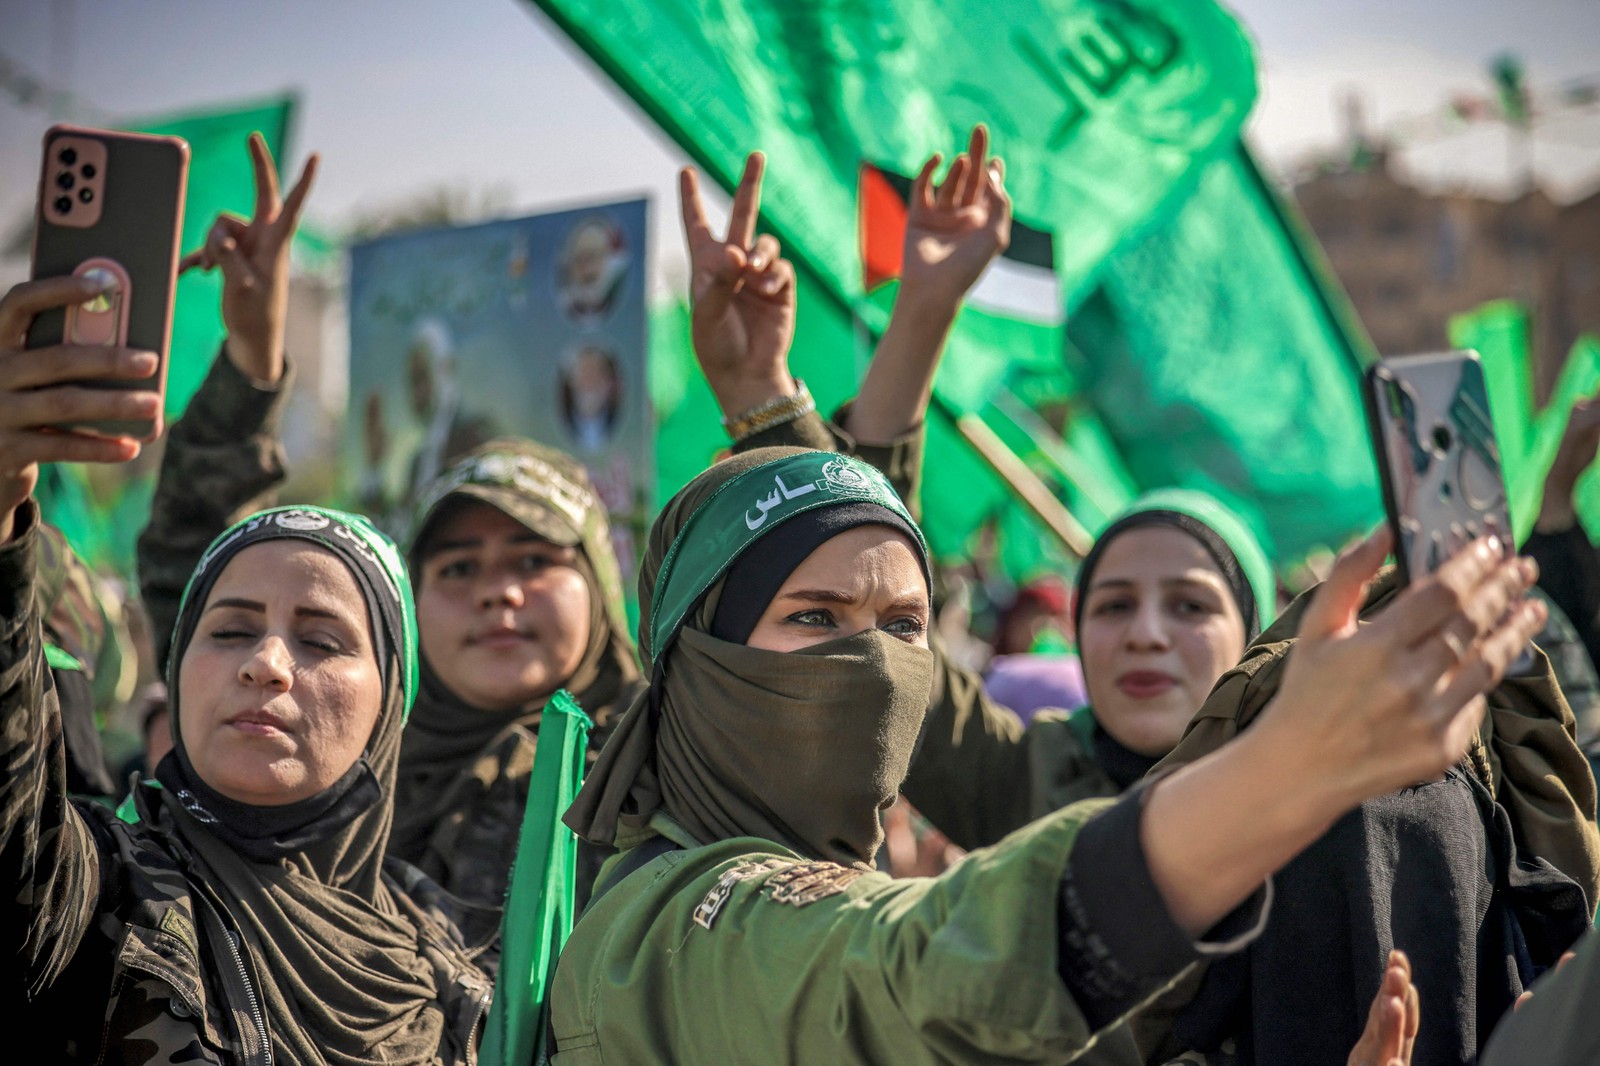 Mulheres apoiadoras do movimento islâmico palestino Hamas se reúnem para um comício na Cidade de Gaza, marcando o 35º aniversário da fundação do grupo.  — Foto: MOHAMMED ABED / AFP